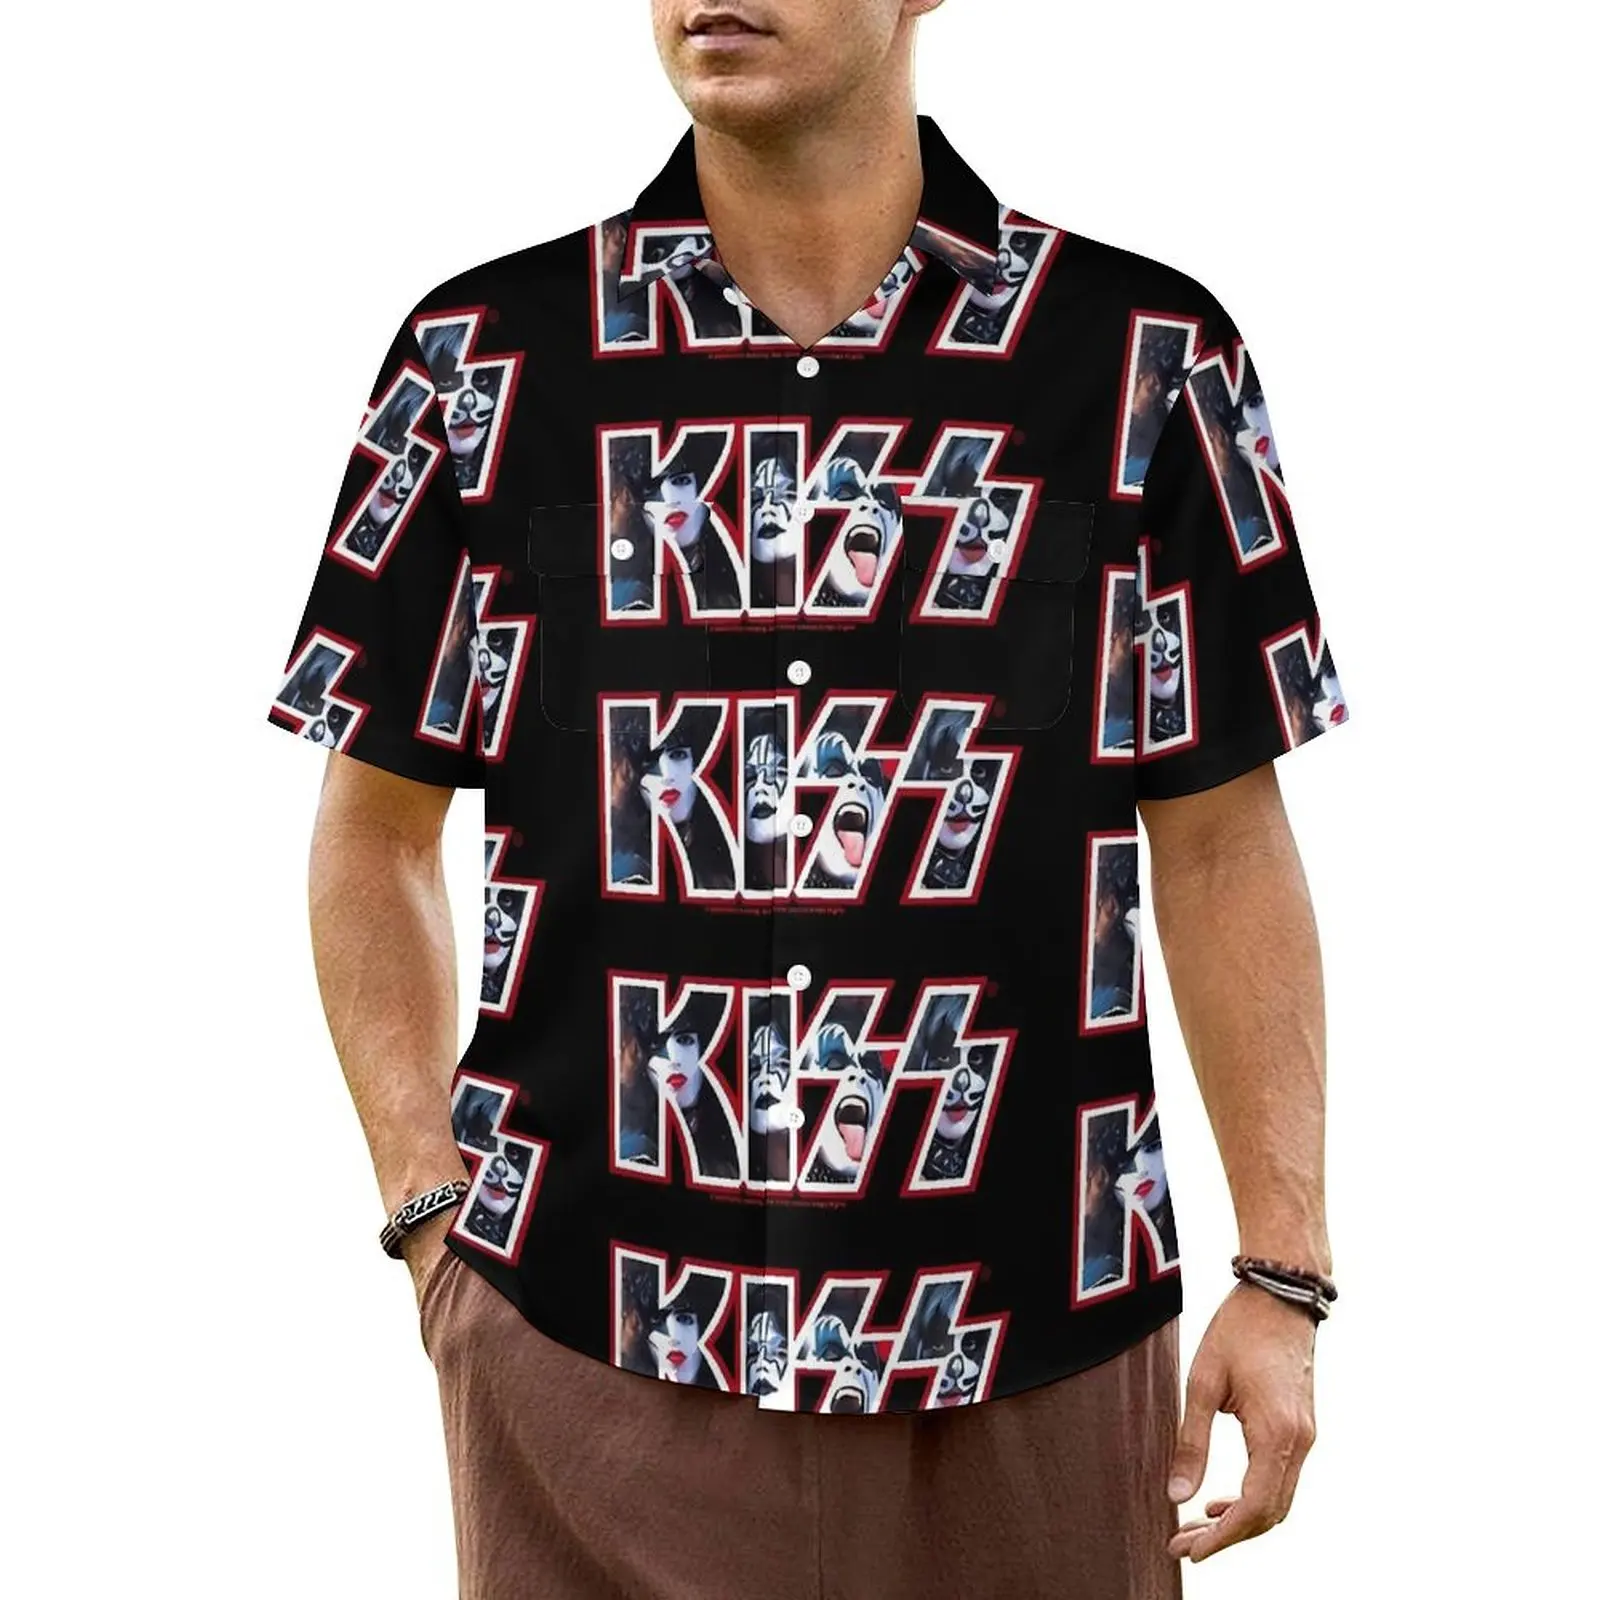 

Повседневная рубашка Kiss Band, свободные Гавайские рубашки с принтом логотипа Kiss, мужская пляжная уличная одежда с коротким рукавом и рисунком блузки оверсайз